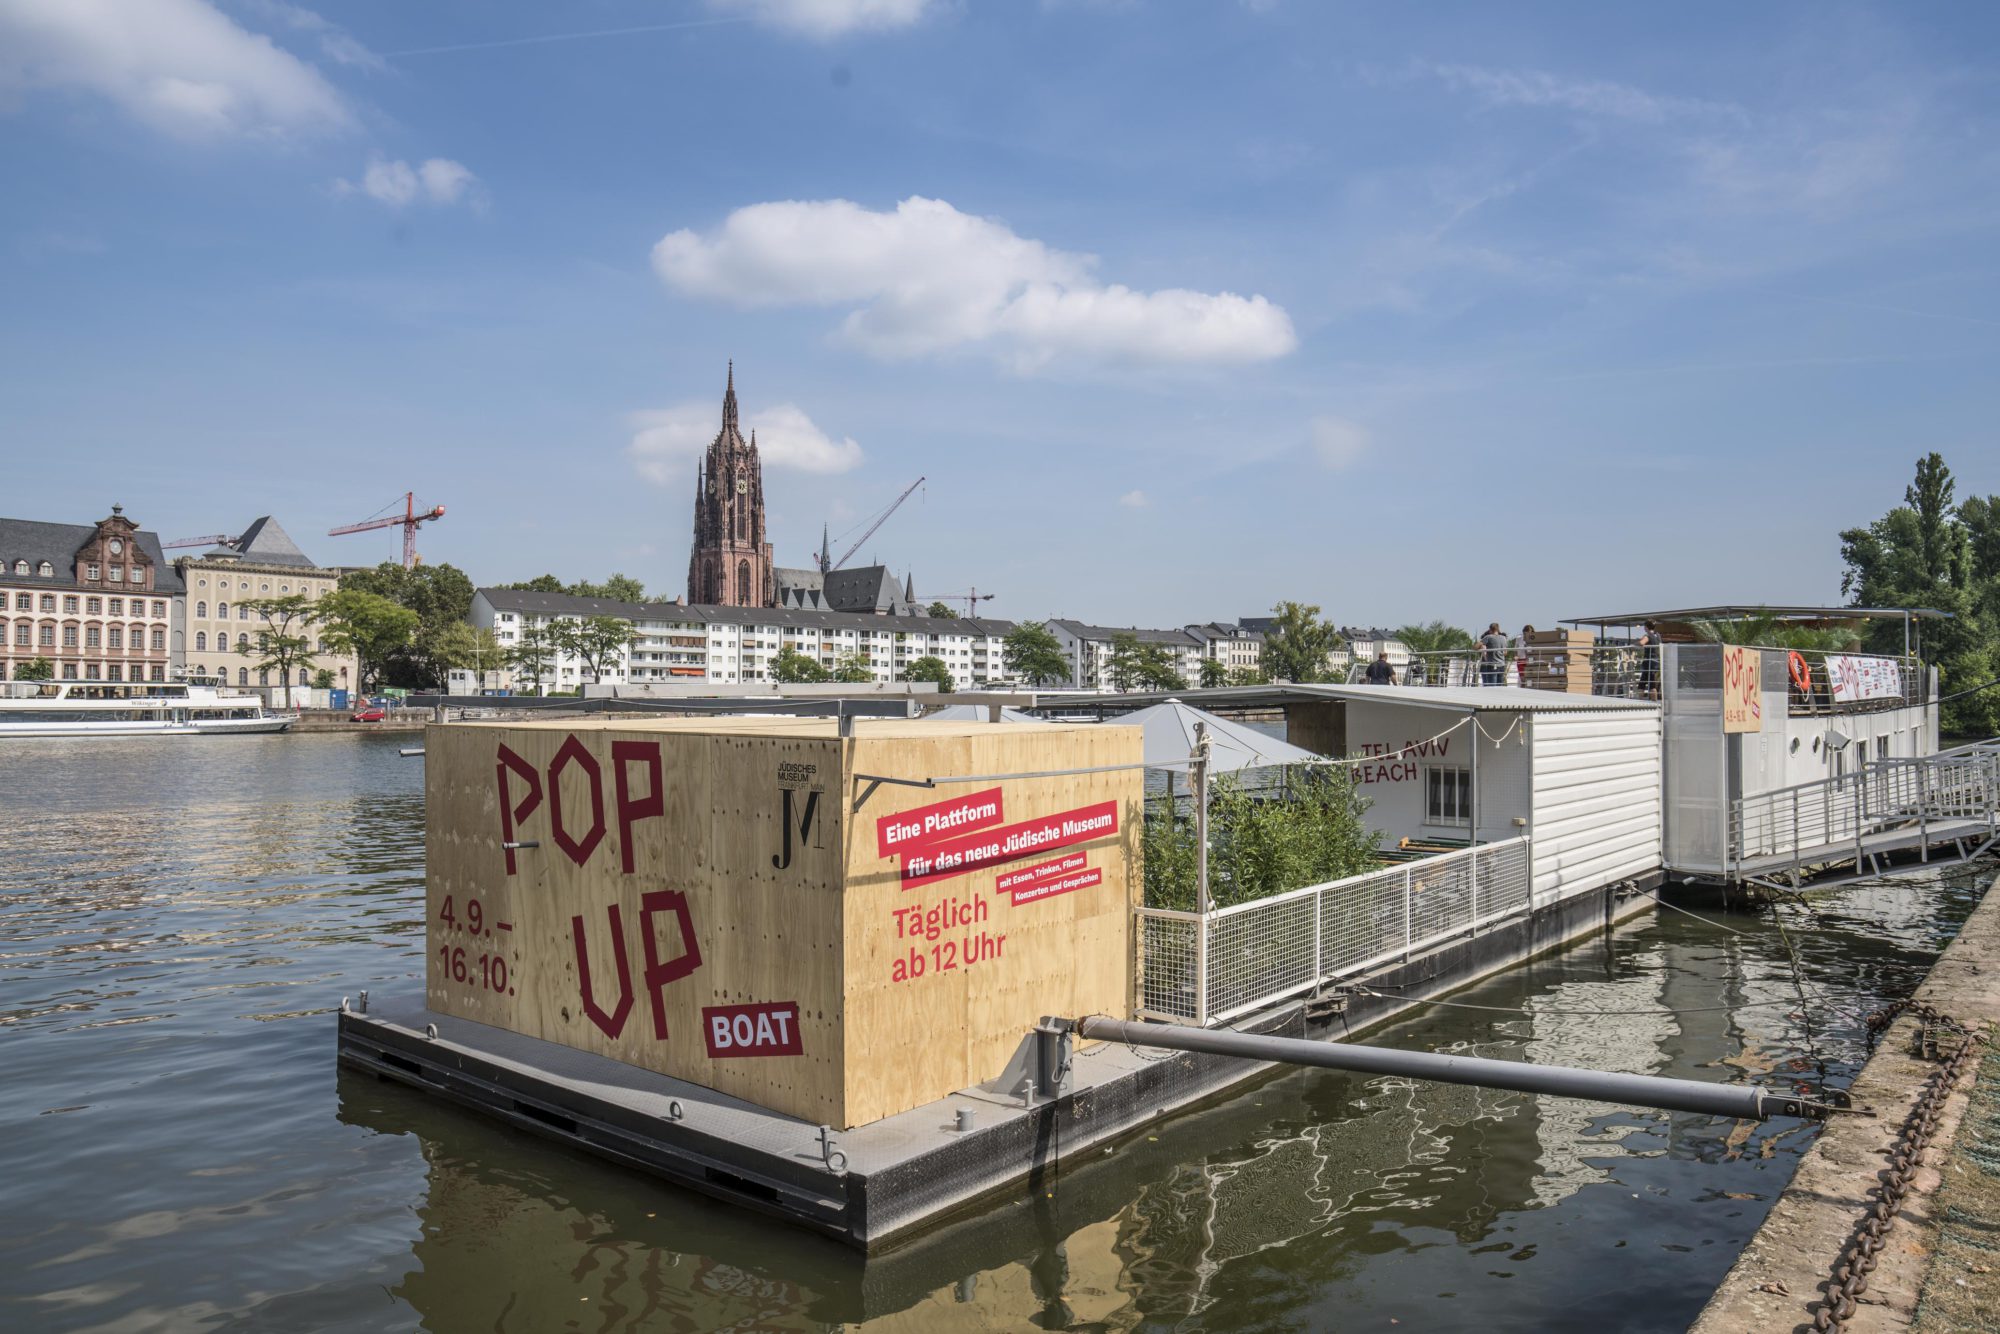 Pop Up Boat in Frankfurt